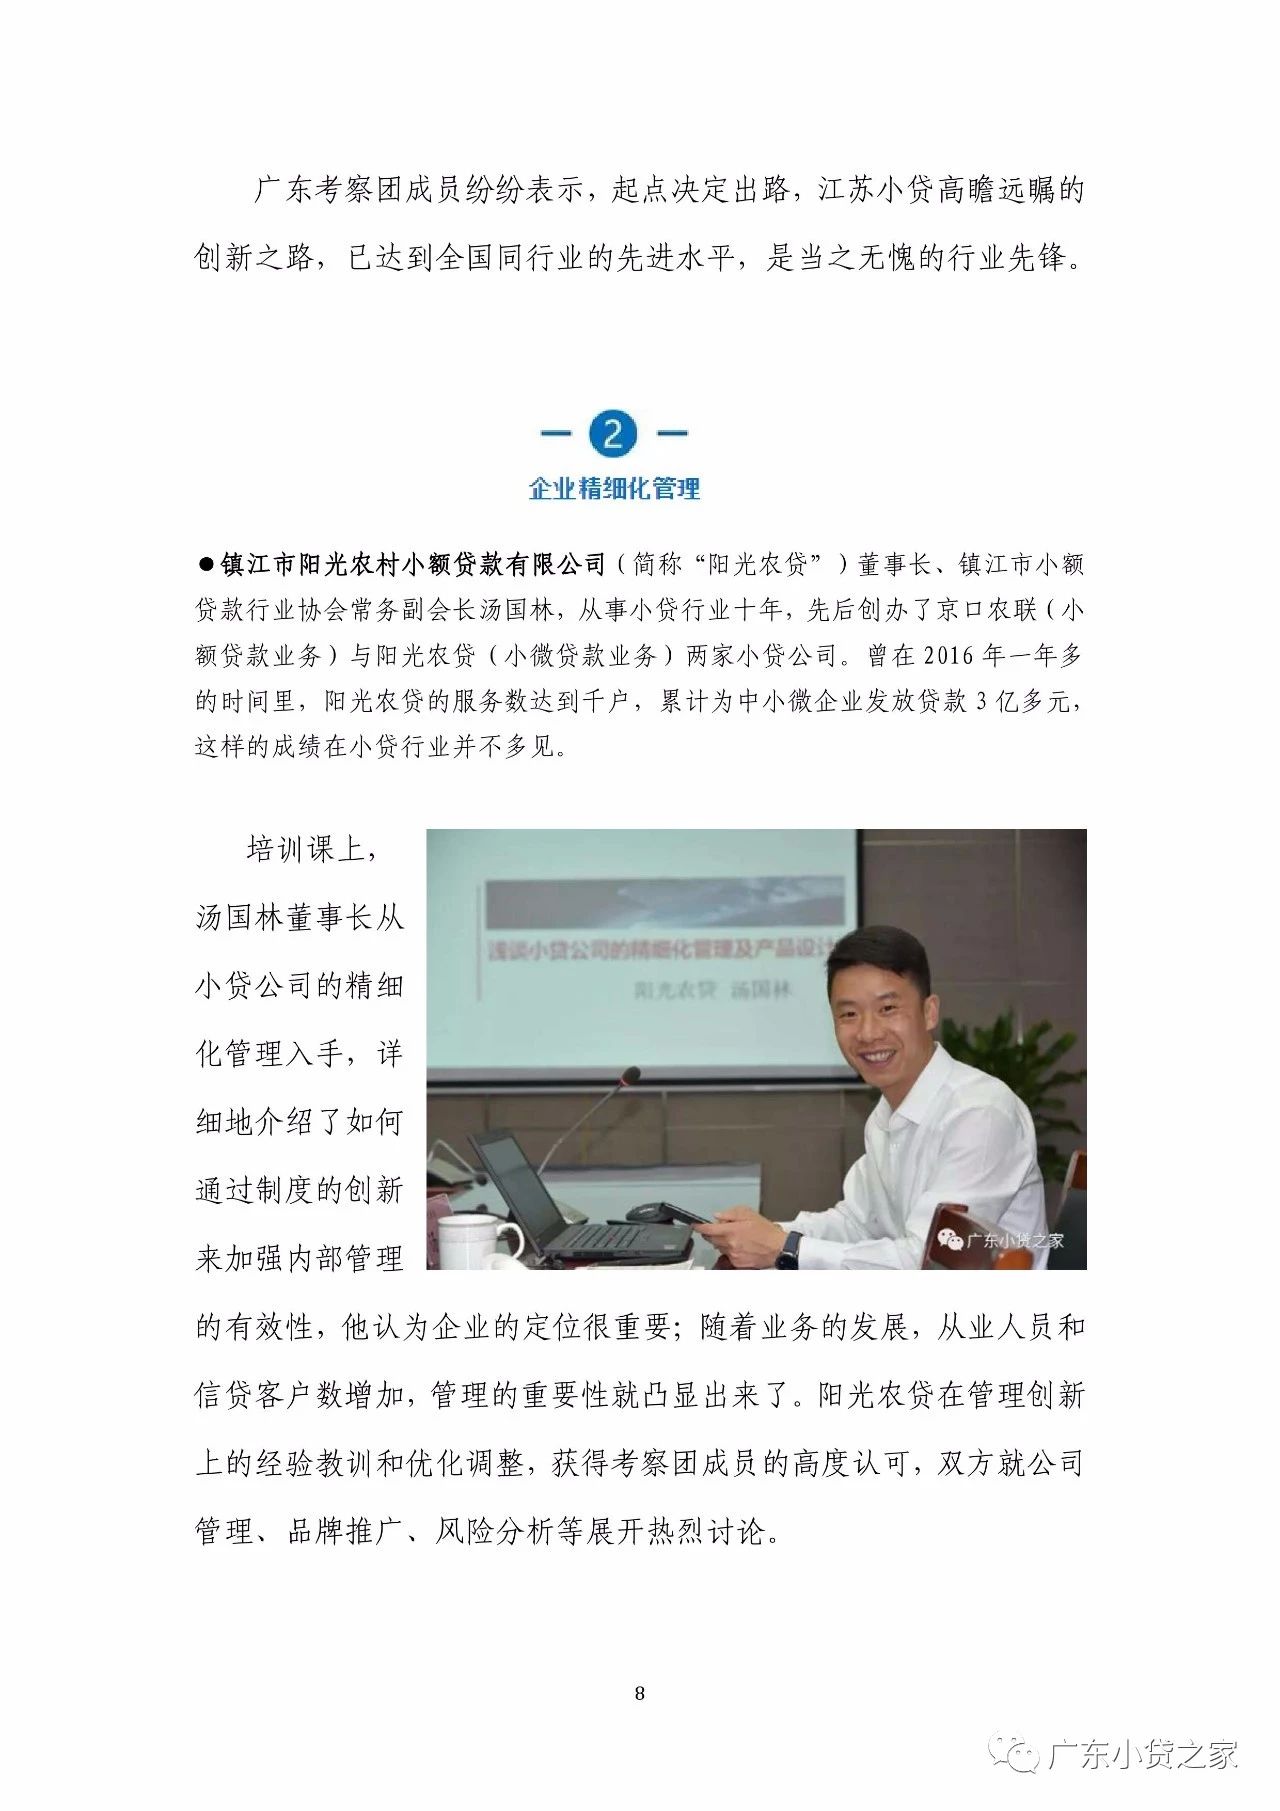 【工作简报】广东省小额贷款公司协会4月份工作简报